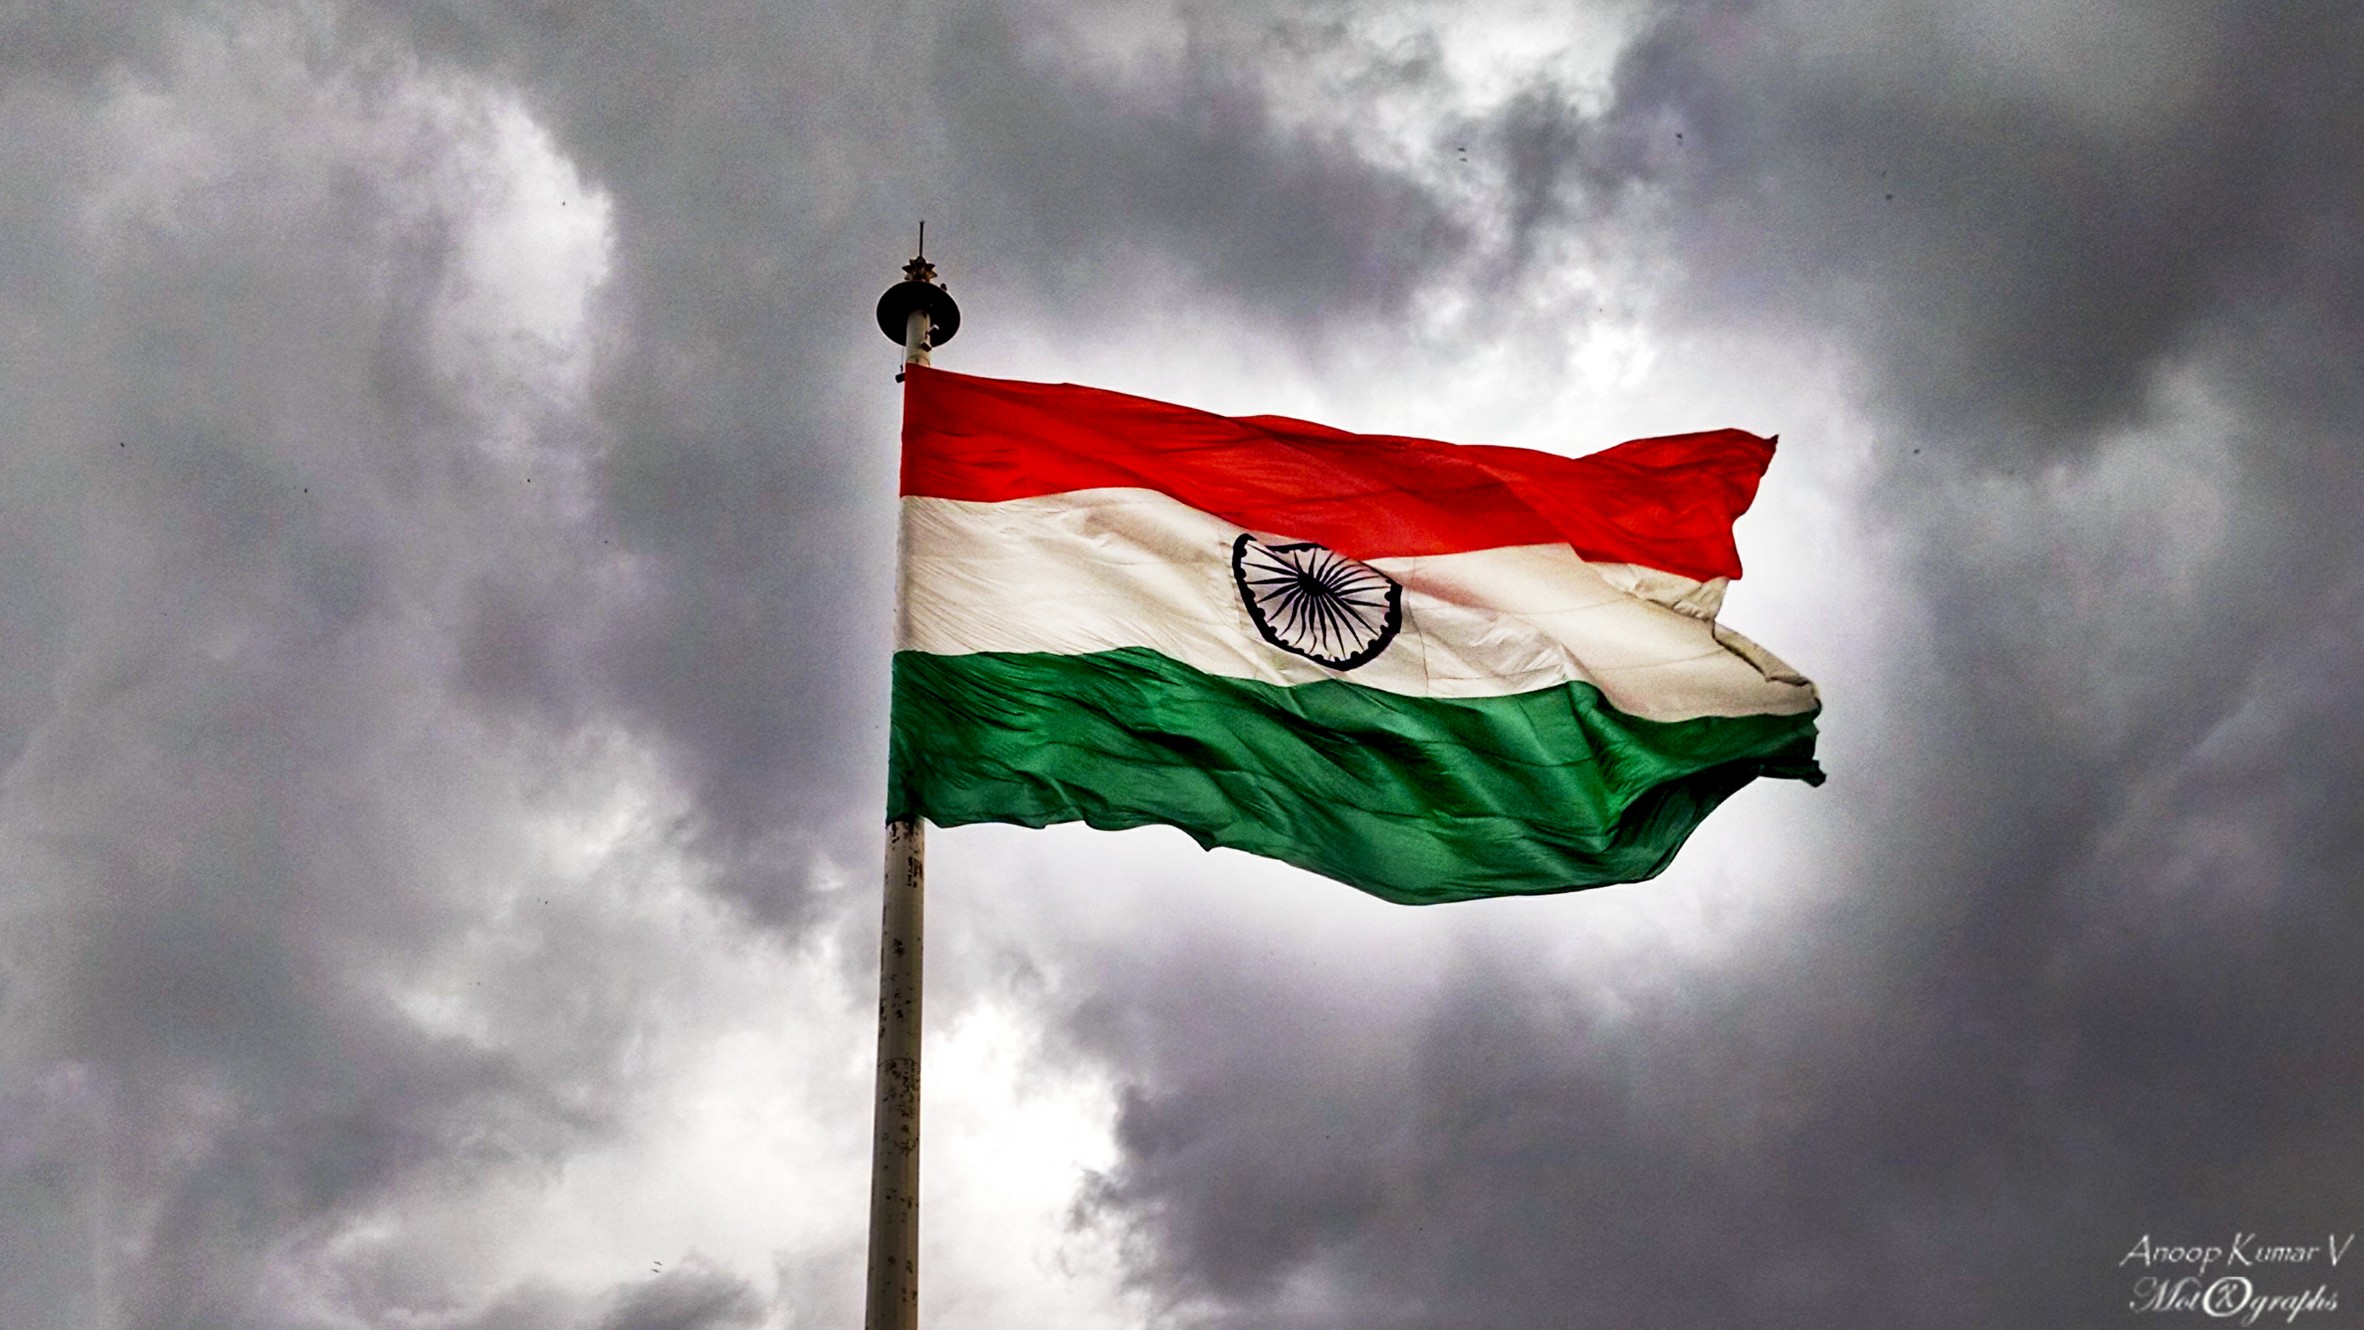 インドのティランガの壁紙,国旗,空,雲,積雲,風